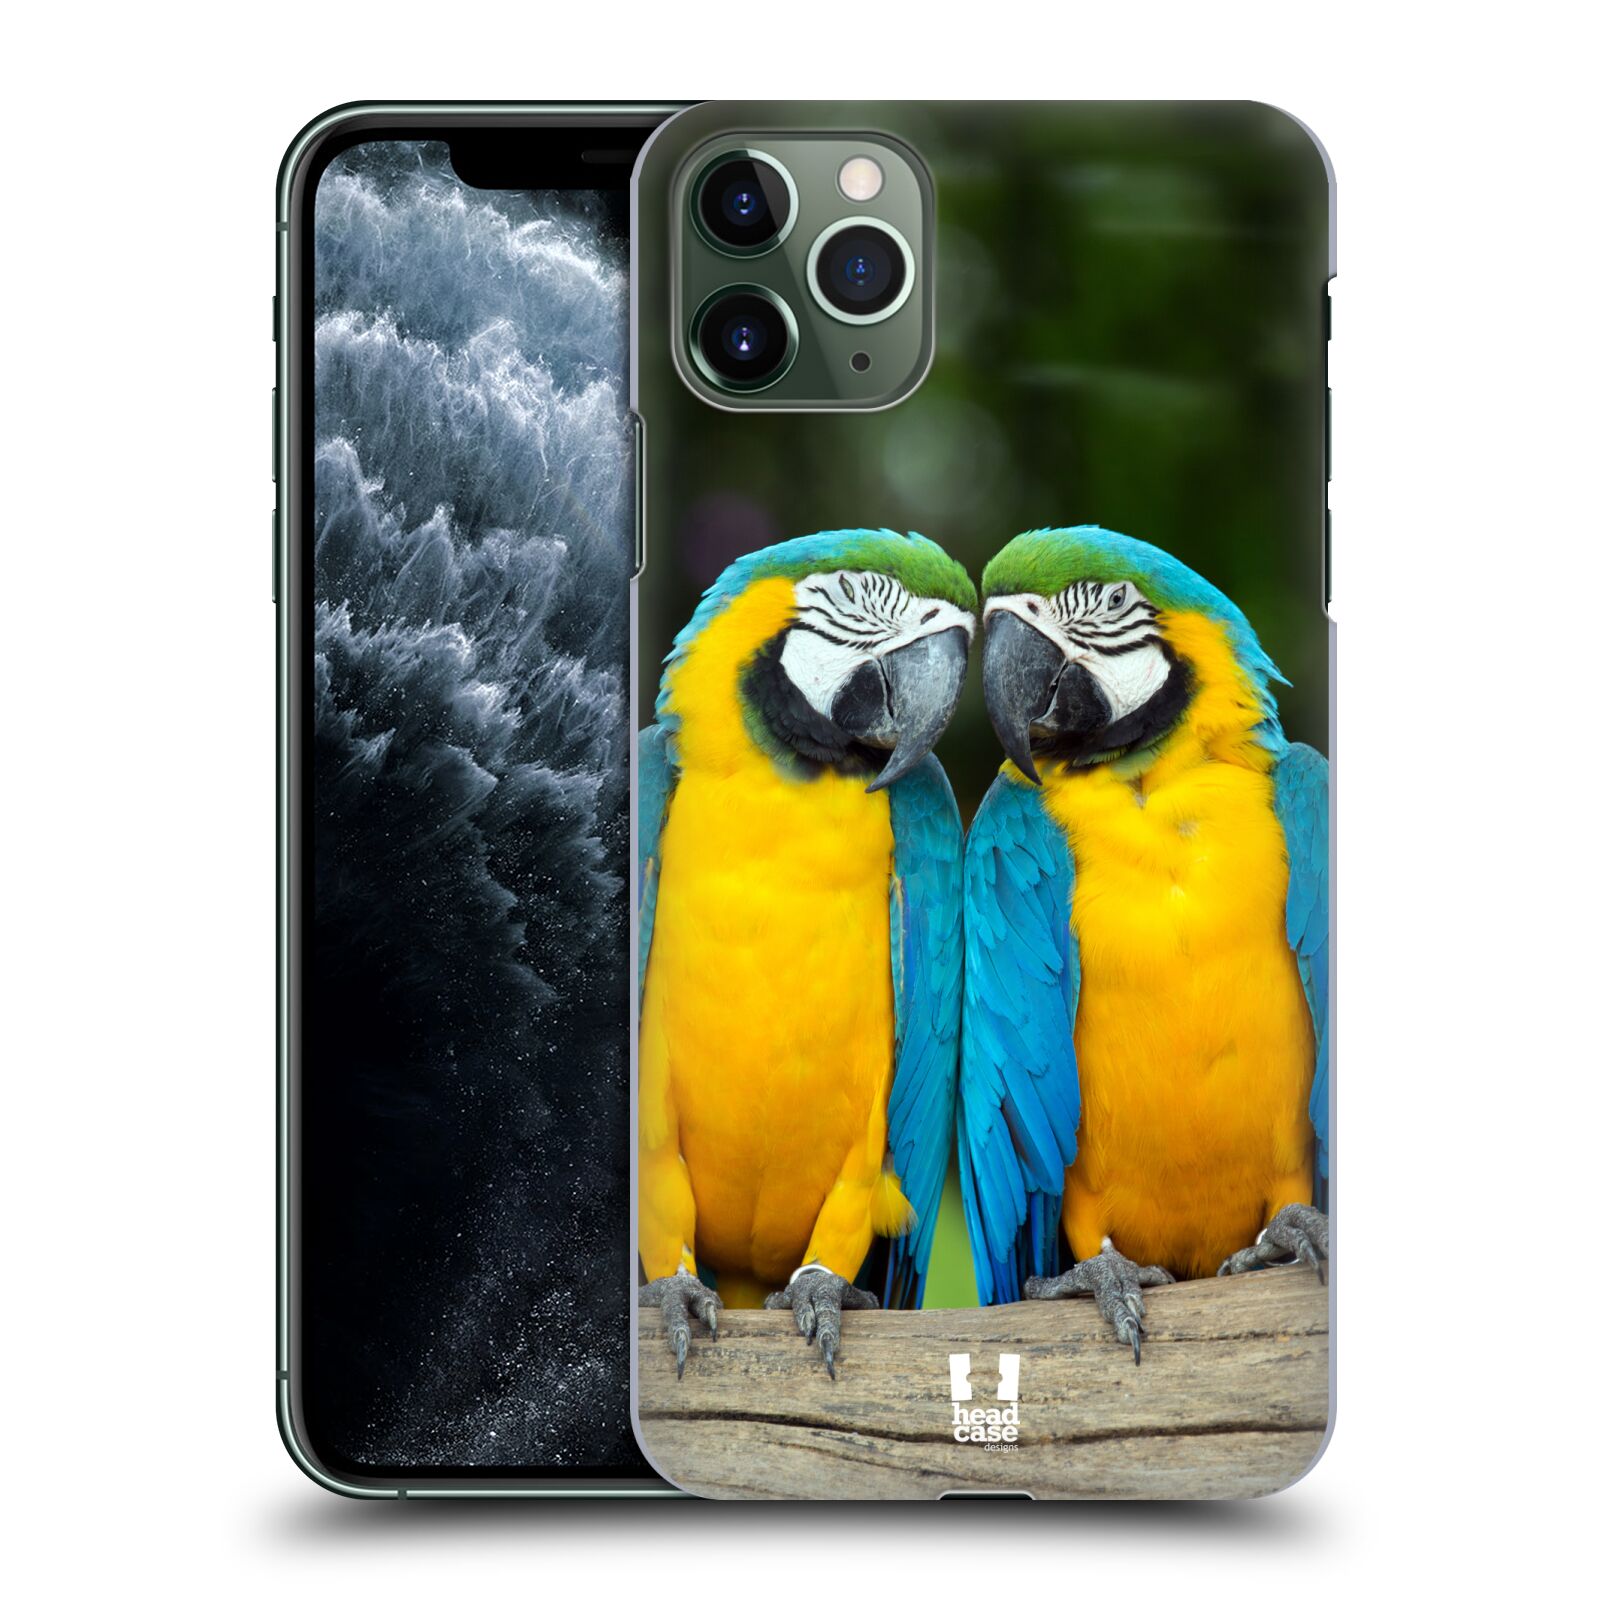 Pouzdro na mobil Apple Iphone 11 PRO MAX - HEAD CASE - vzor slavná zvířata foto dva papoušci